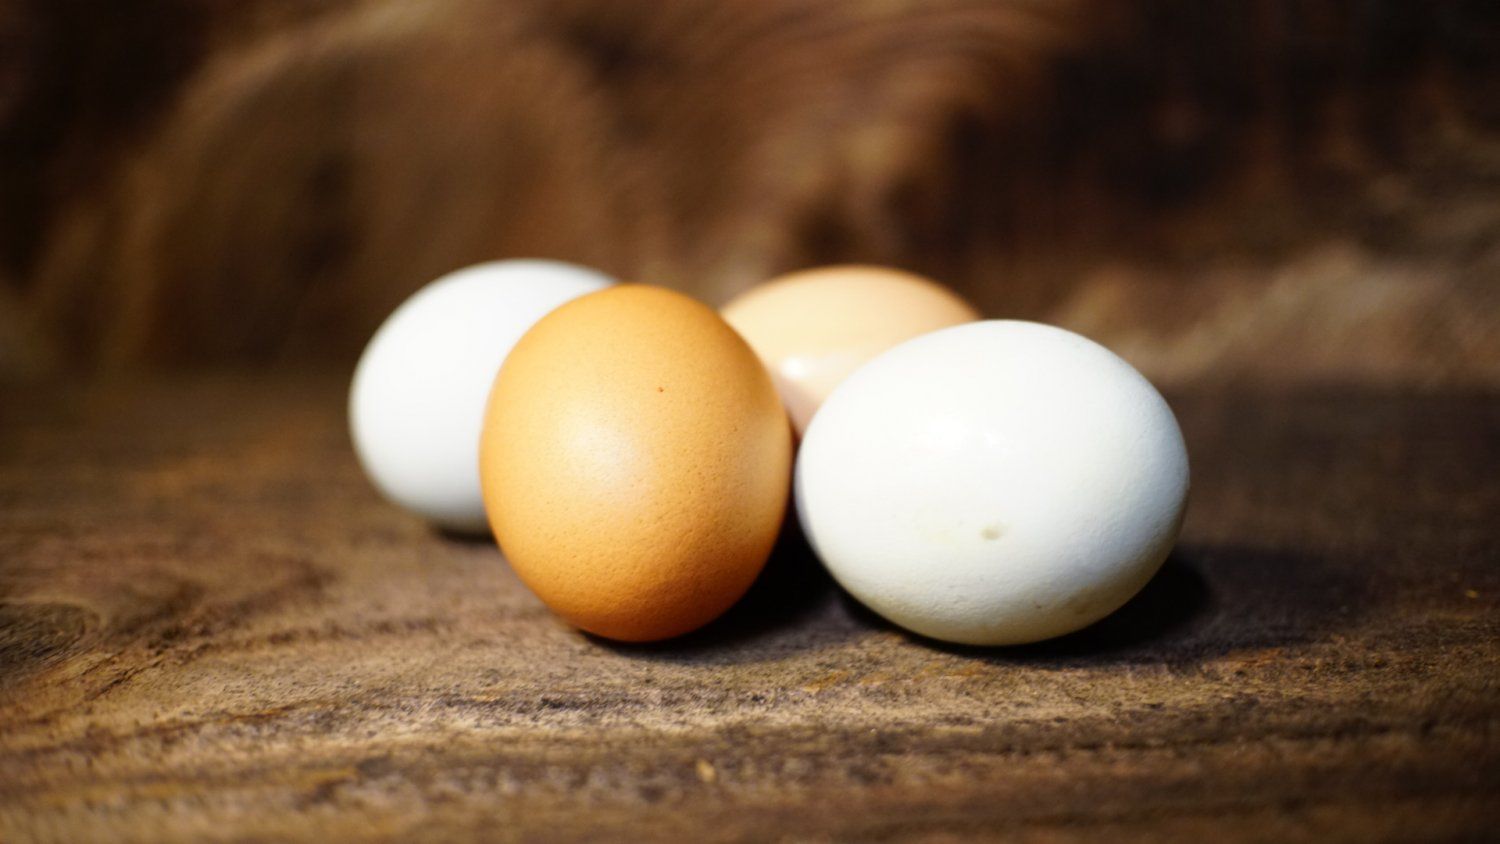 CSA Week 6: Save your egg cartons!